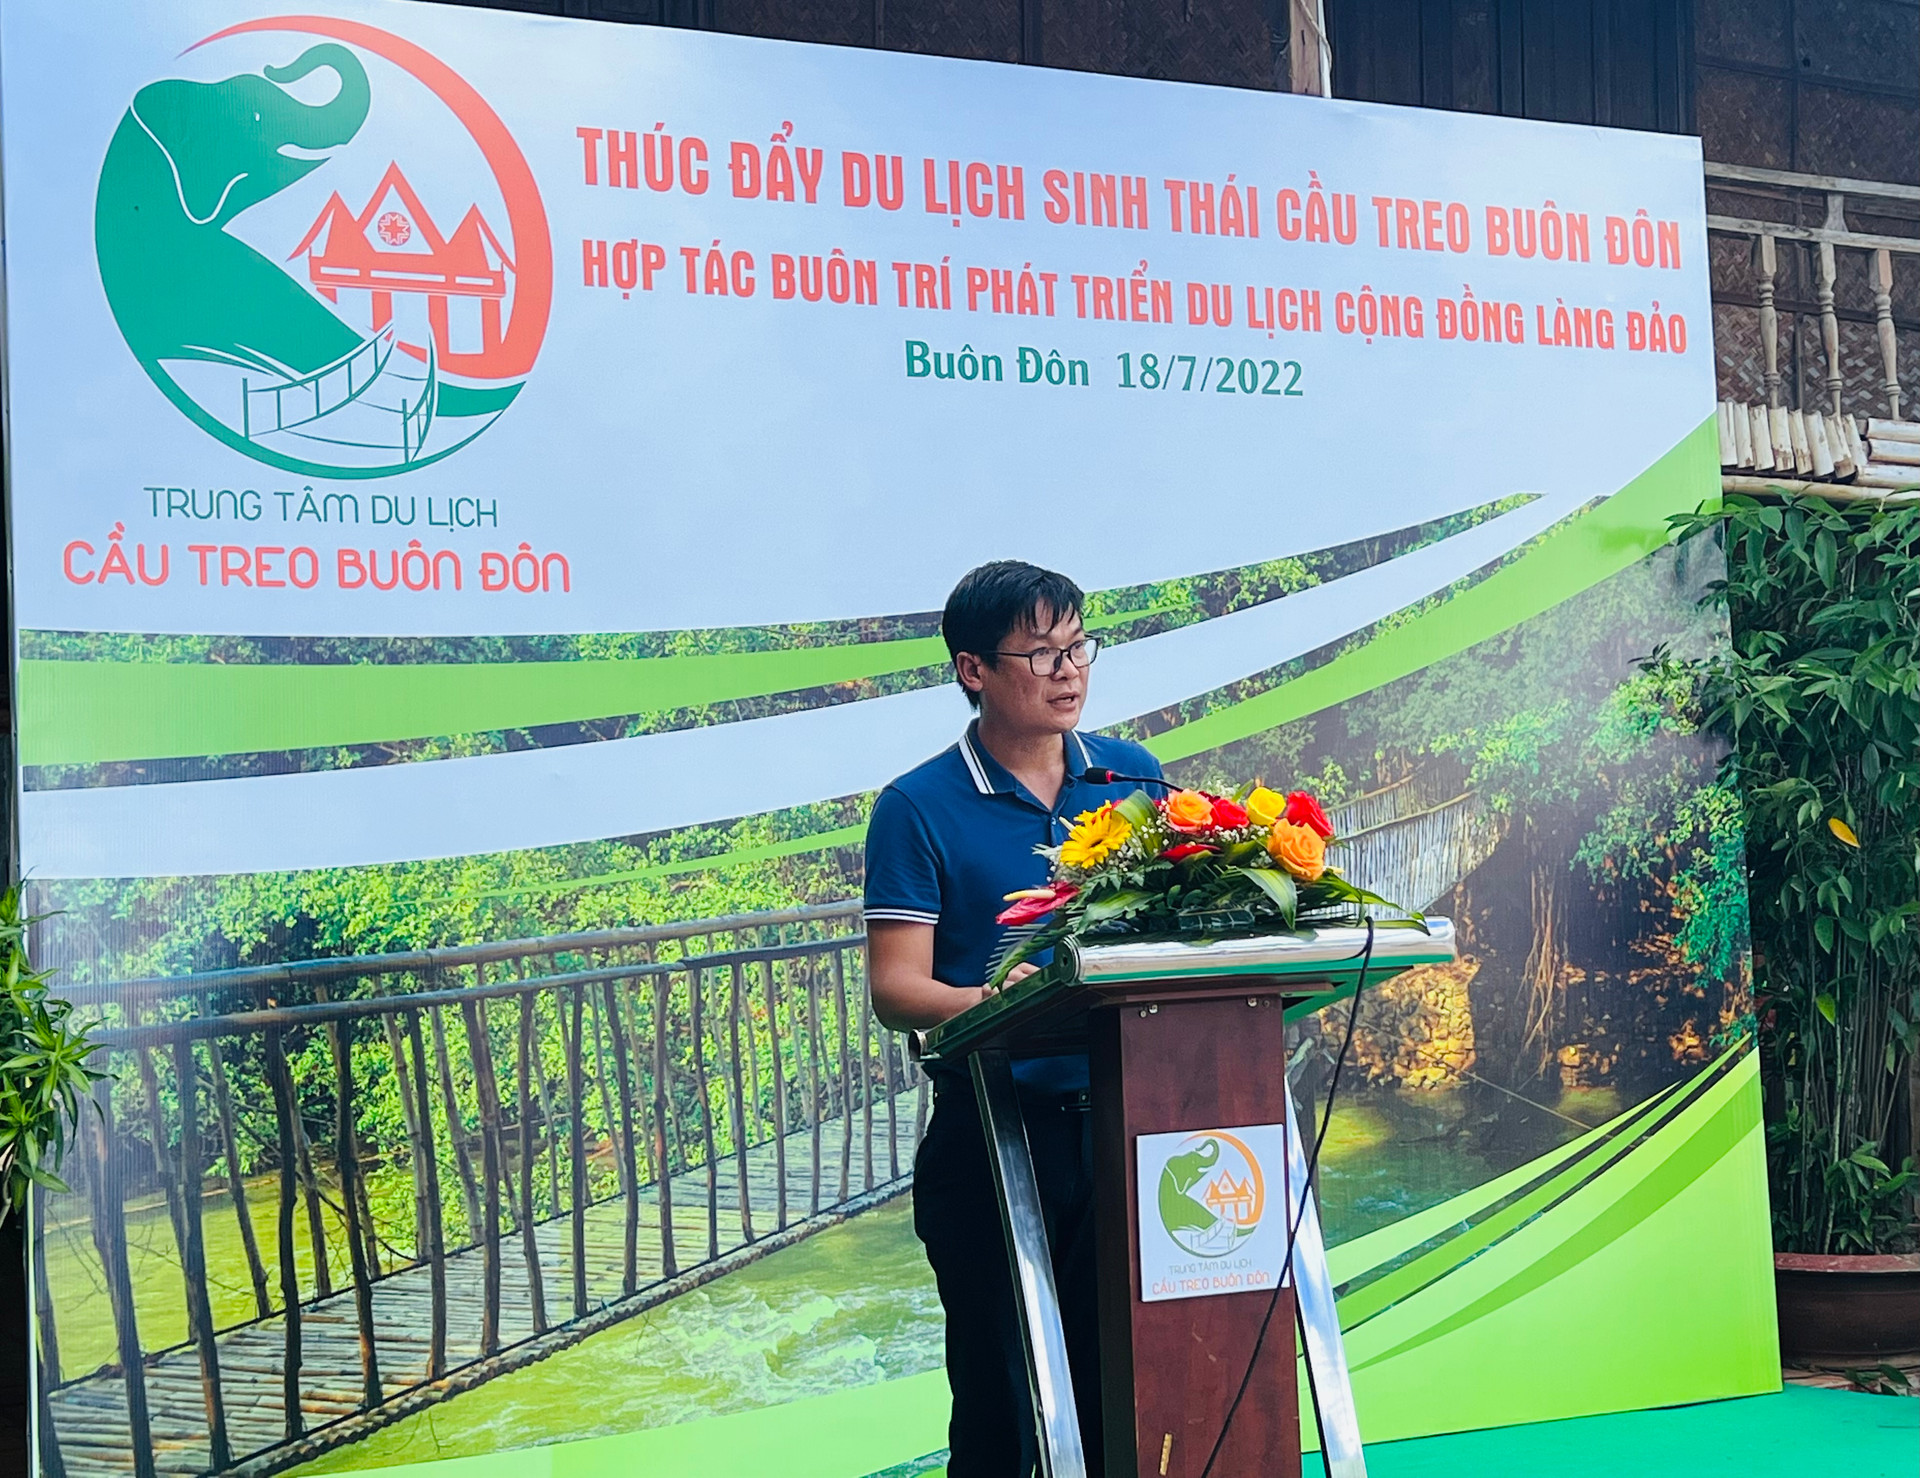 Ông Lê Đức Huy, tổng Giám đốc Công ty TNHH MTV XNK 2-9 Dak Lak sẽ tận dụng các nguồn lực cải thiện chất lượng dịch vụ hướng đến phát triển du lịch bền vững.